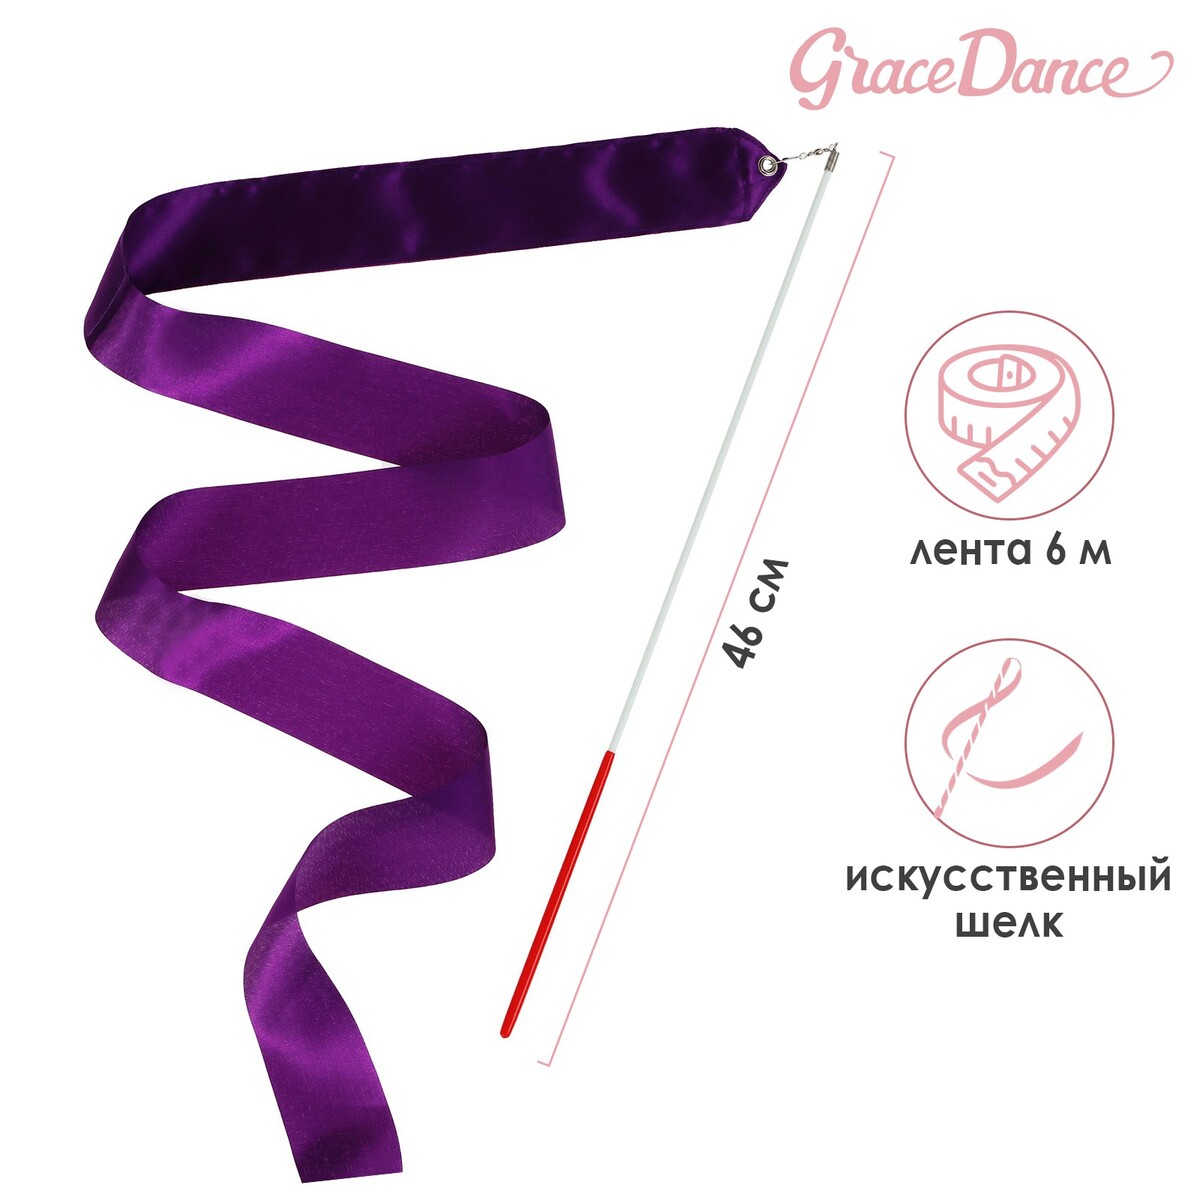 Лента для художественной гимнастики с палочкой grace dance, 6 м, цвет фиолетовый лента для художественной гимнастики с палочкой grace dance 6 м фиолетовый